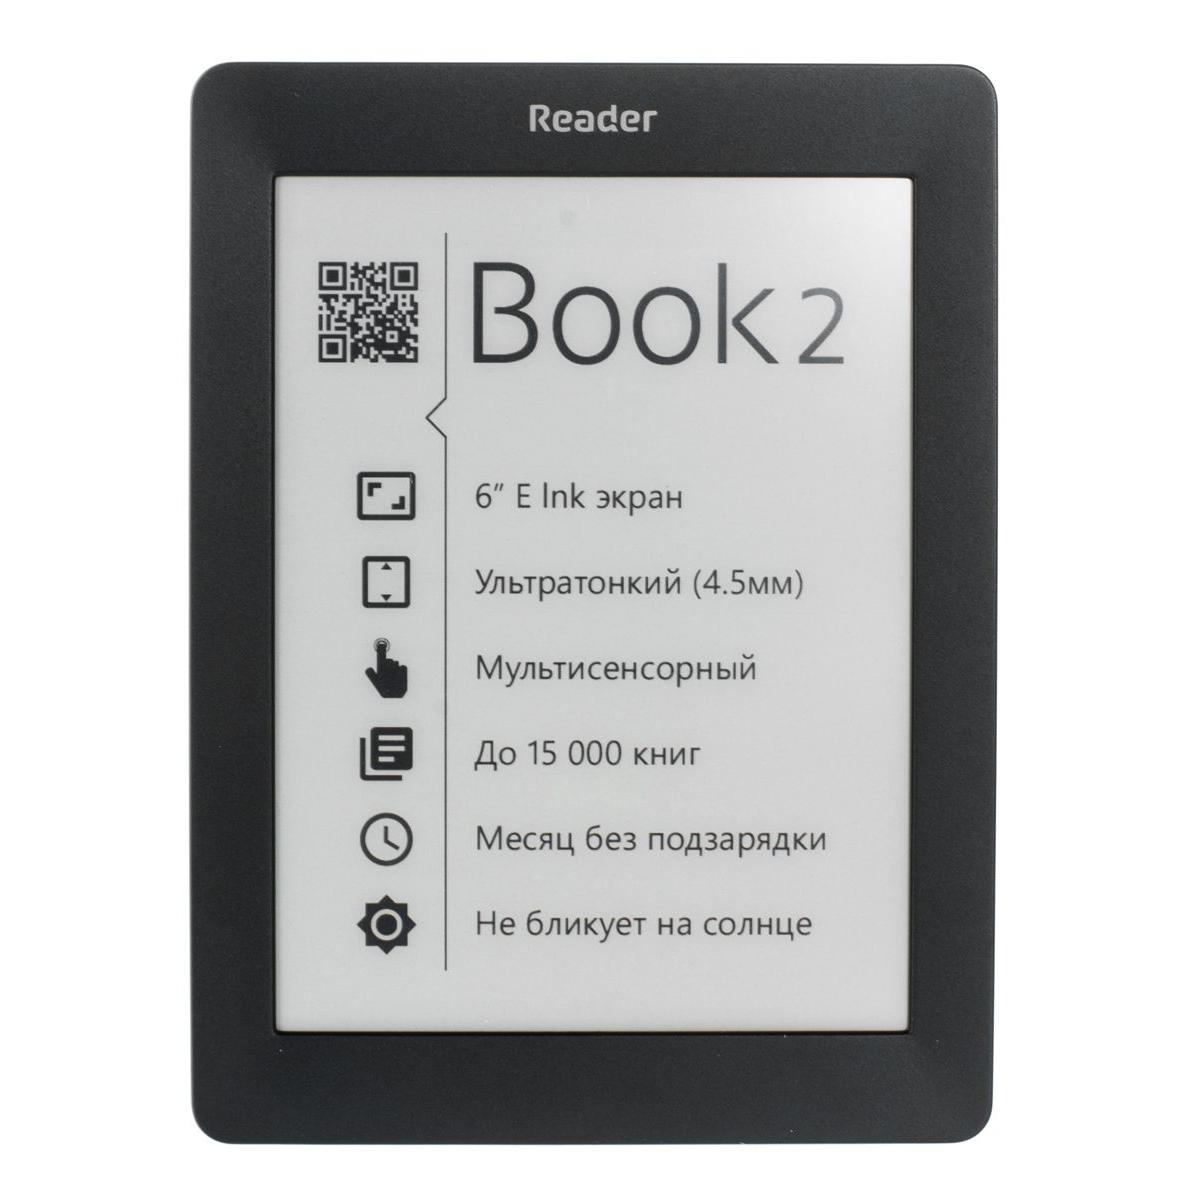 Электронные книги чернил. POCKETBOOK 2 Reader. POCKETBOOK 1. Электронная книжка. Чтение электронных книг.